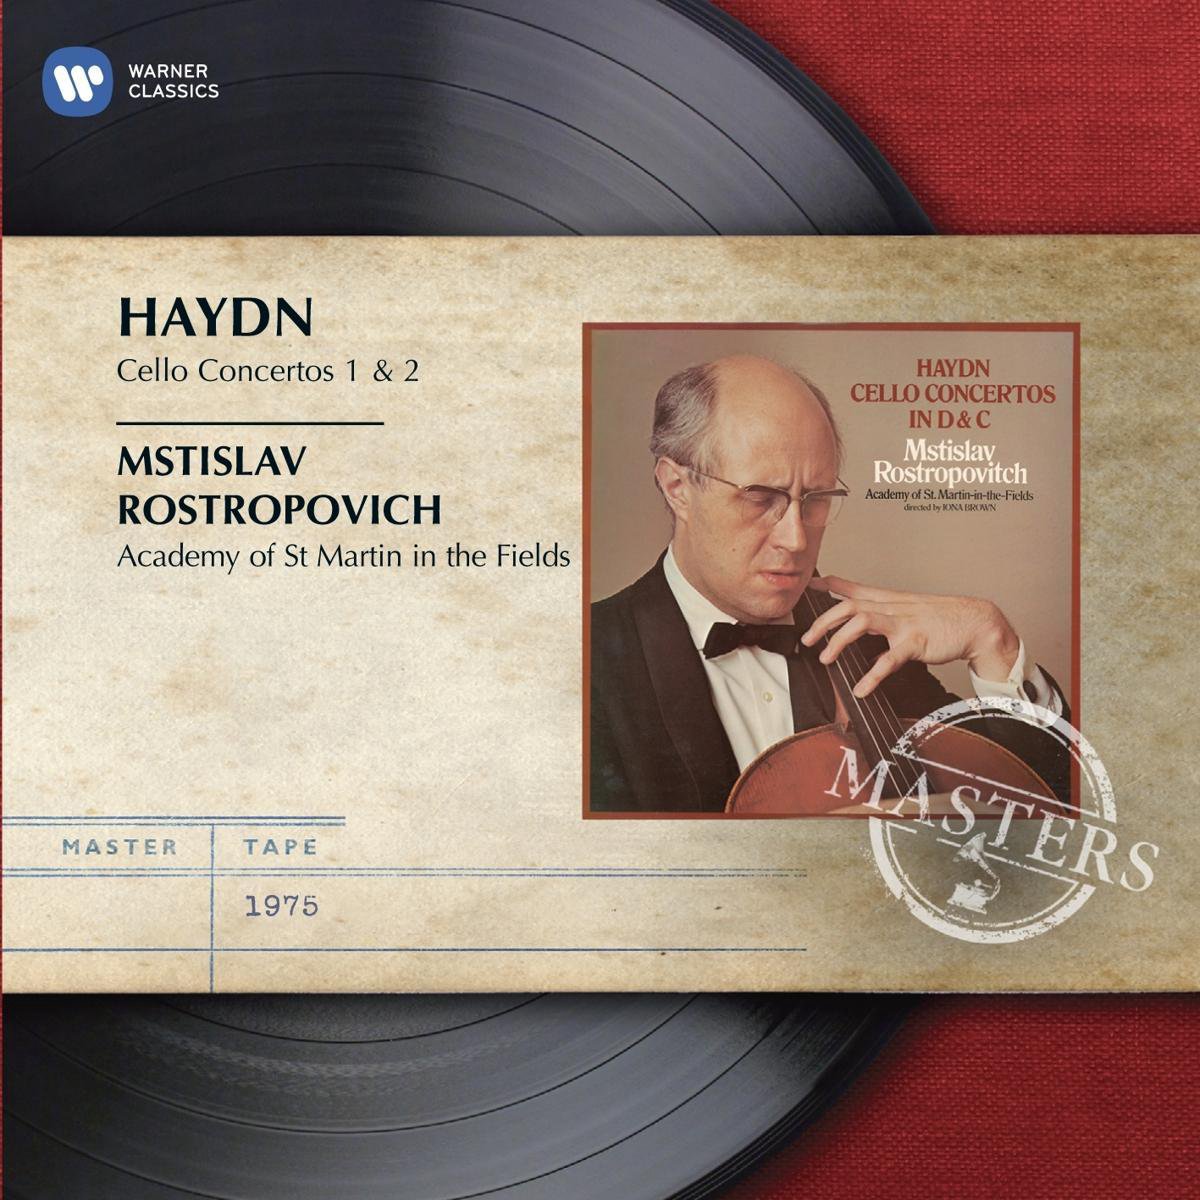 Haydn/Cello Concertos 1 & 2 - Mstislav Rostropovich